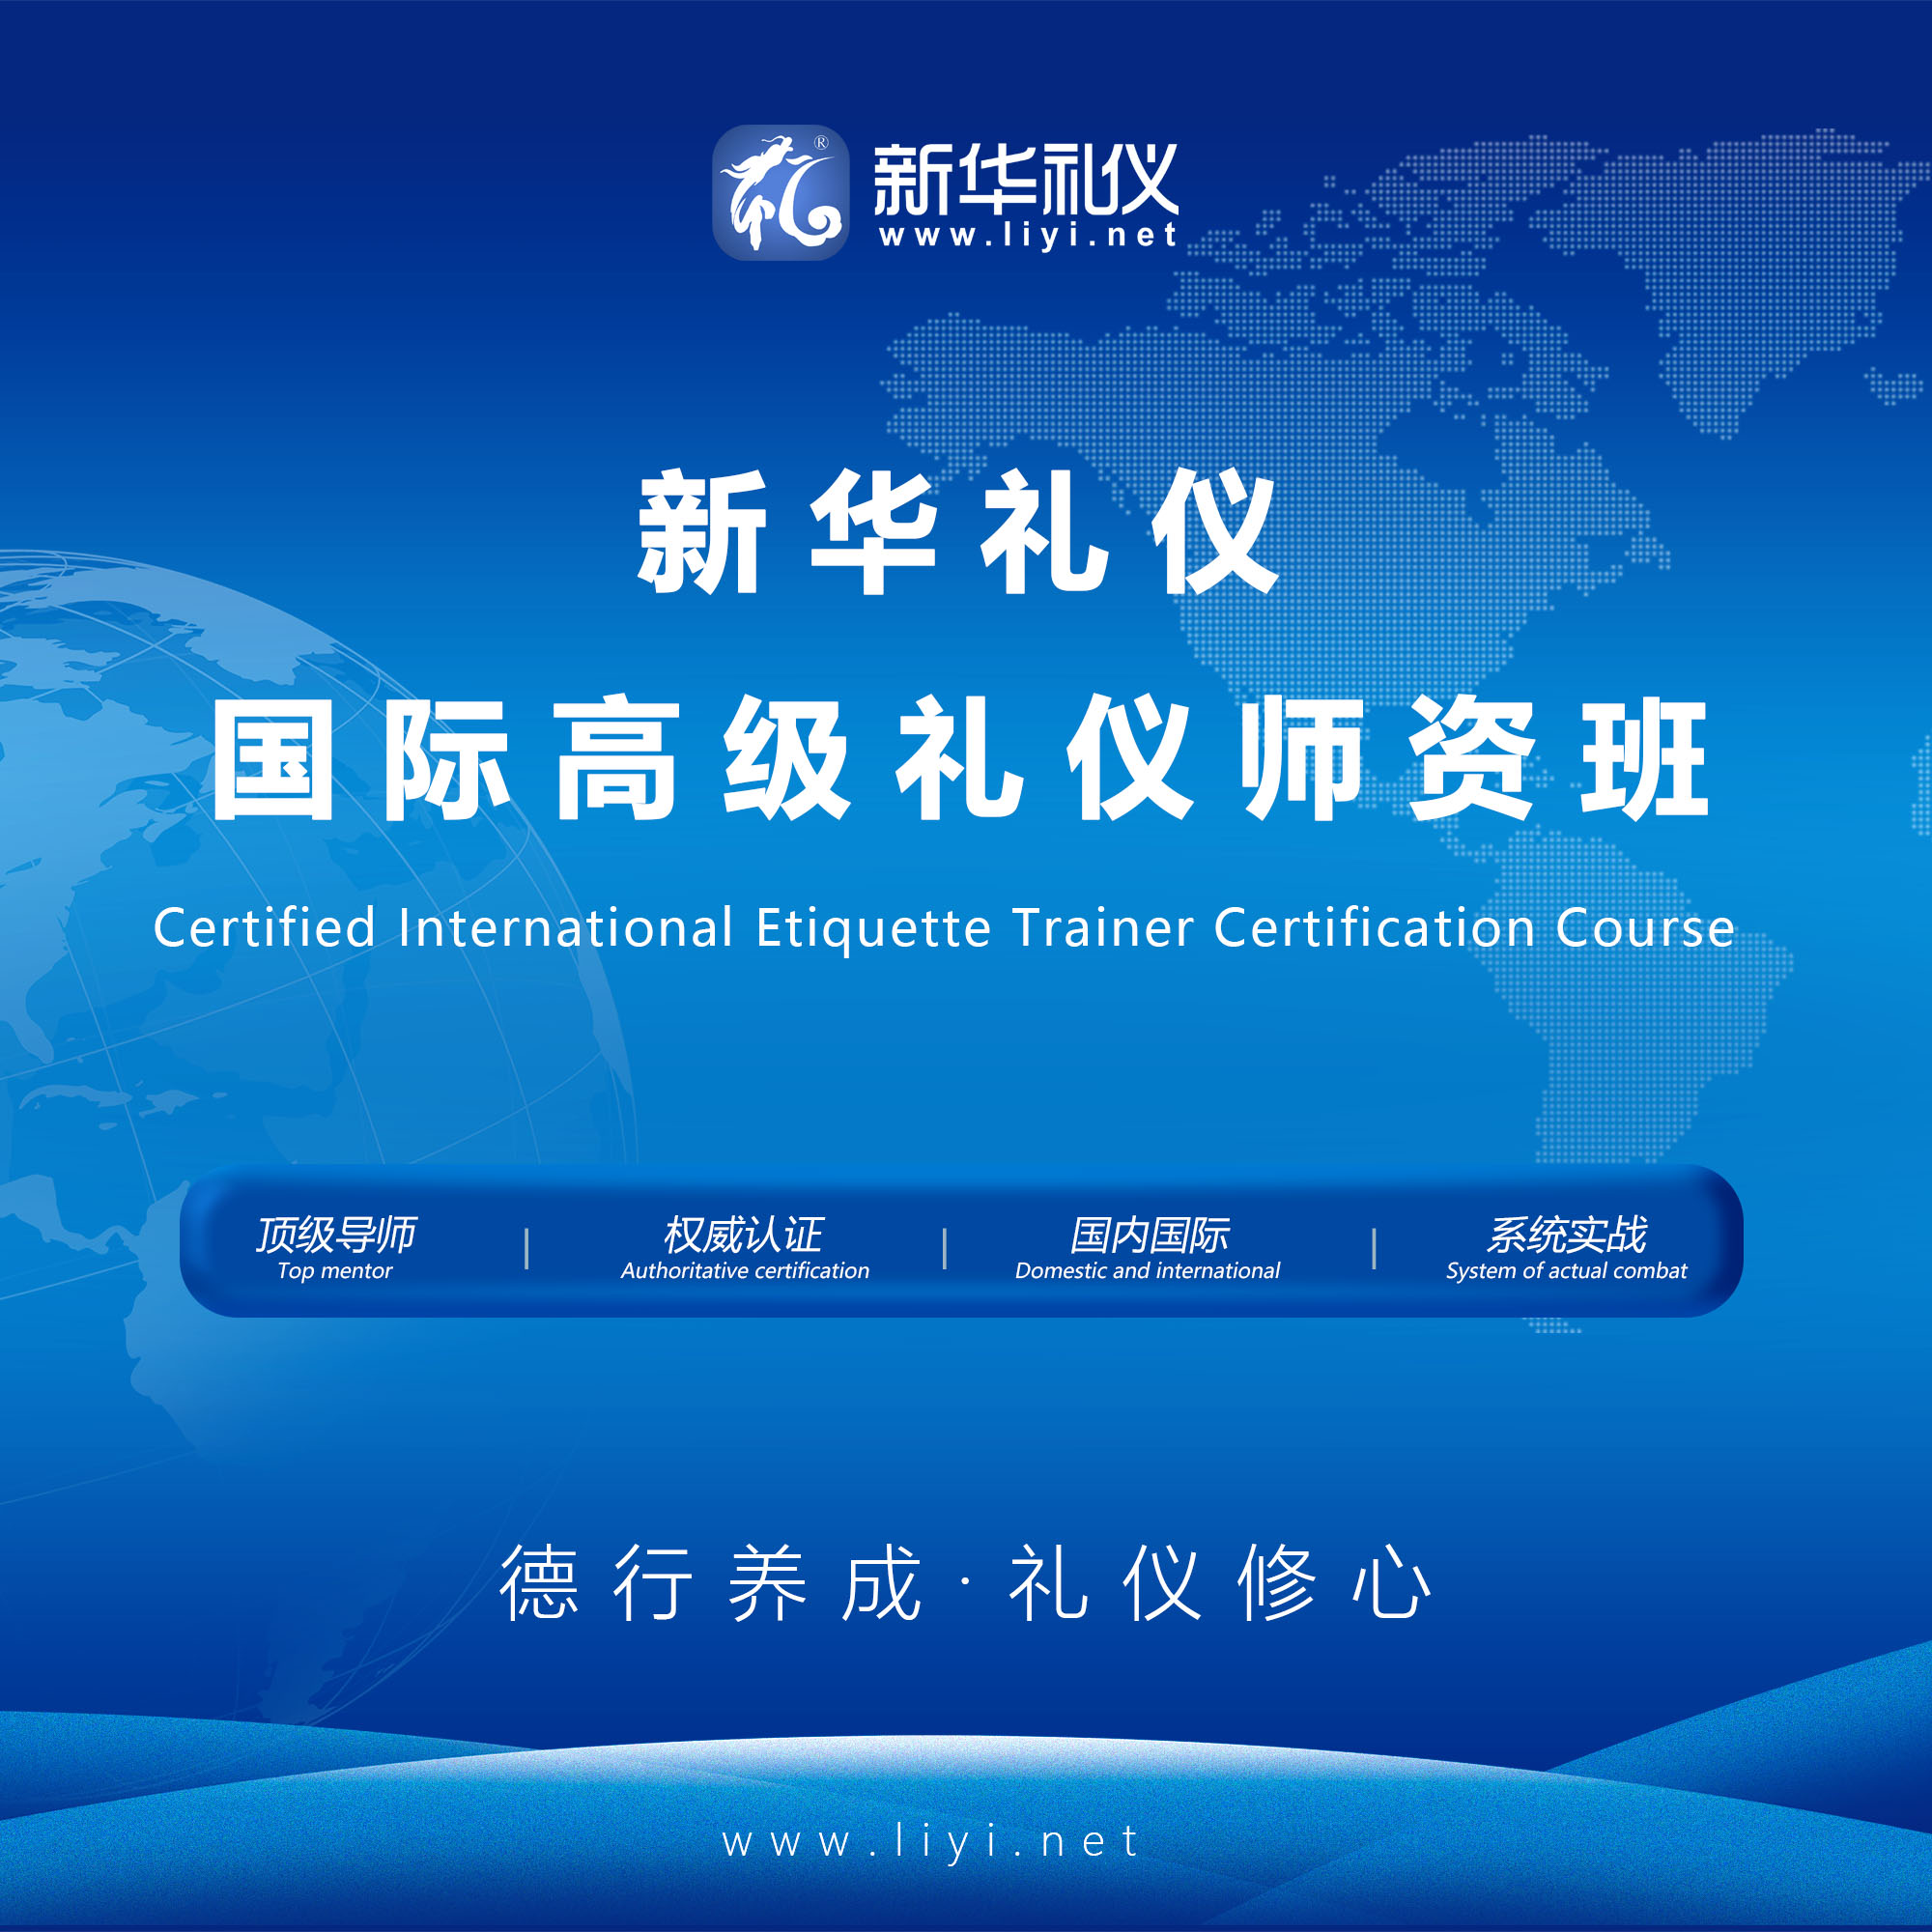 2020年6月25日·上海·新华礼伊《国际注册高级礼仪培训师认证班》